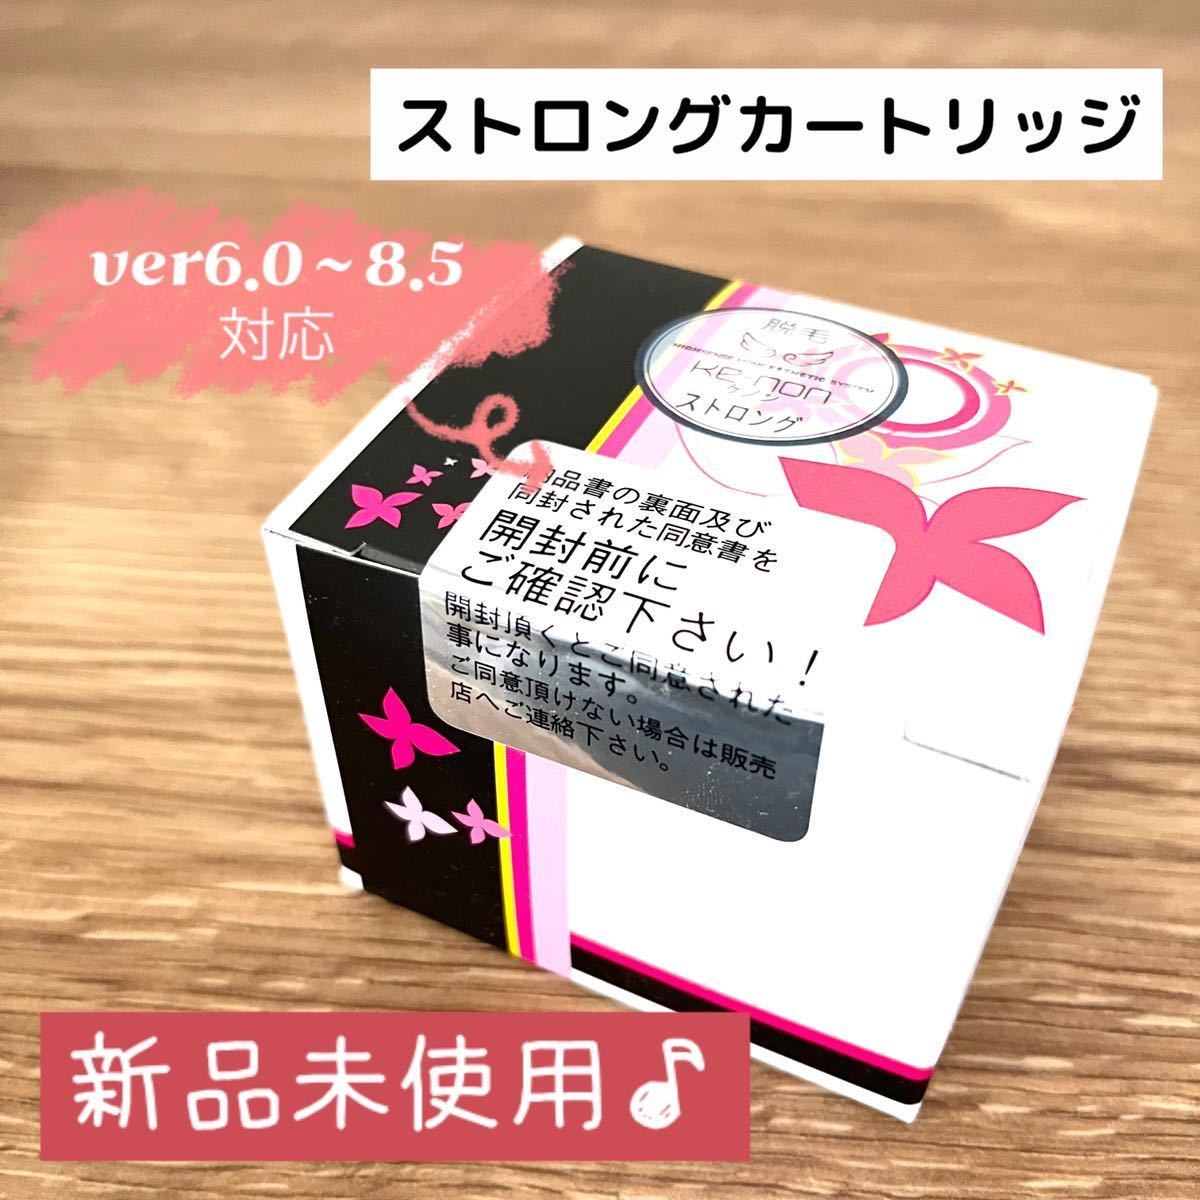 ケノン☆新品ストロング カートリッジ☆ver6.0〜8.5最新☆未使用 家庭 ...